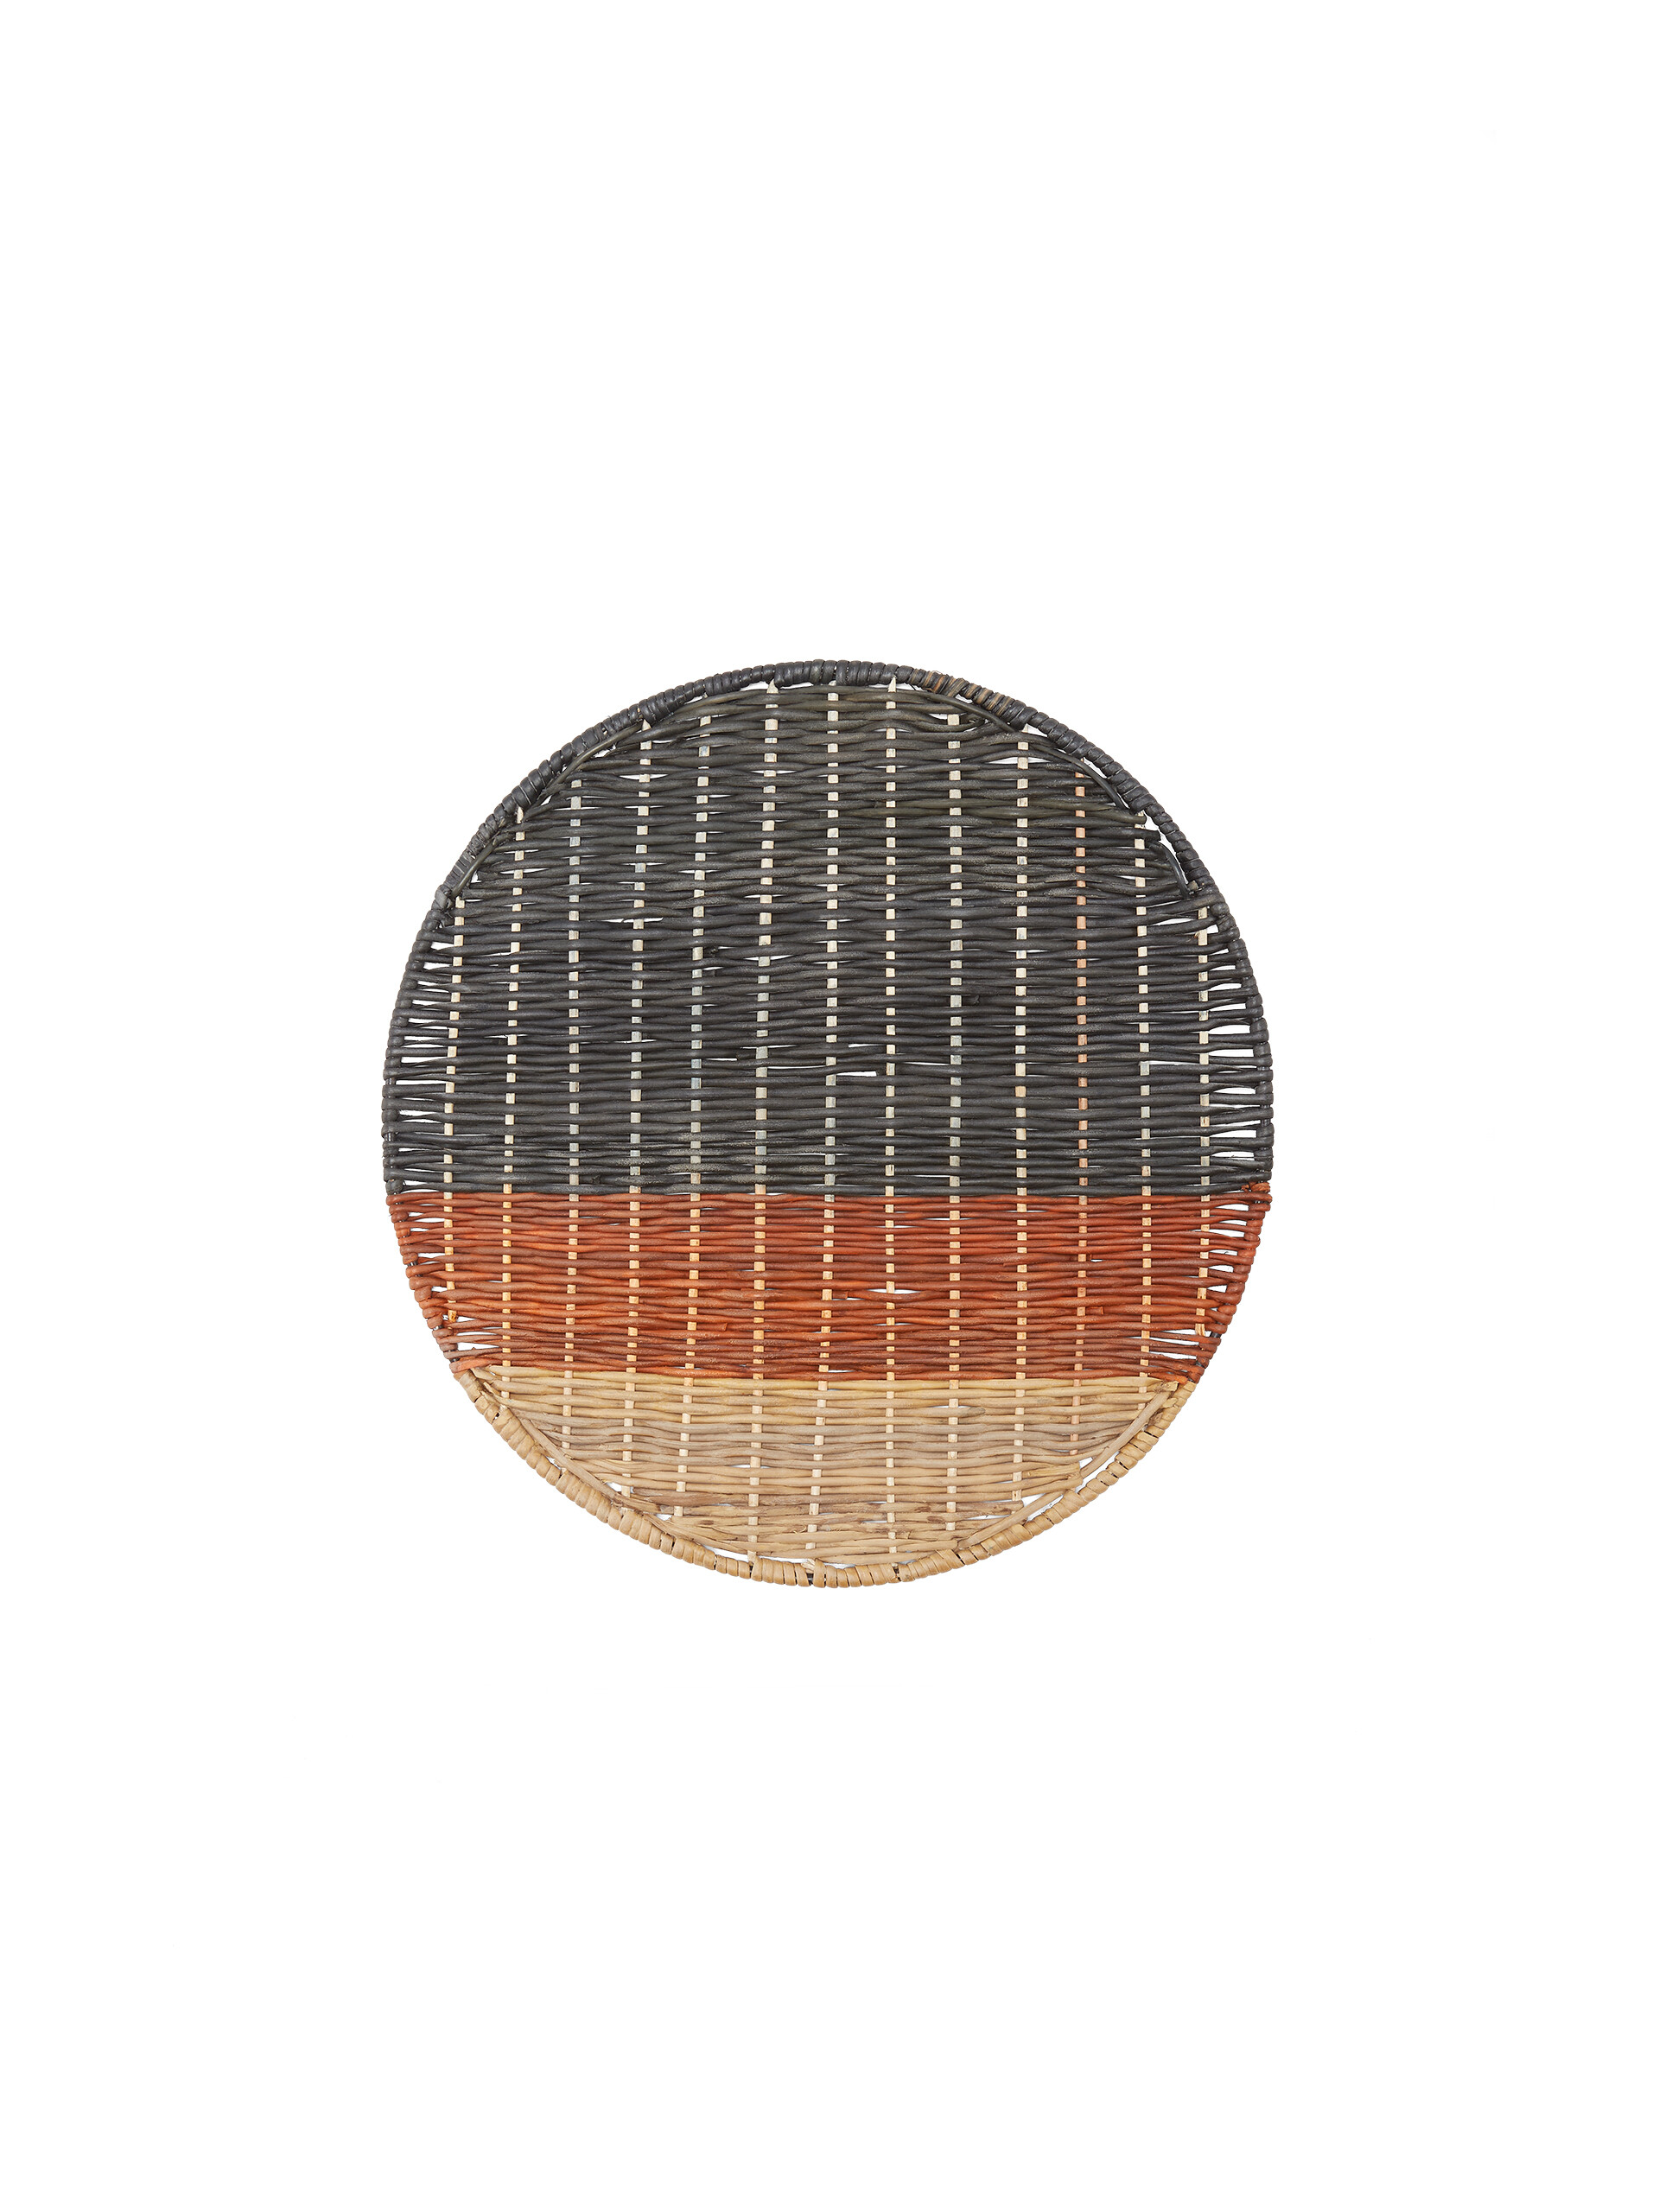 Tovaglietta rotonda MARNI MARKET in ferro e vimini beige bordeaux e nero - Home Accessories - Image 2